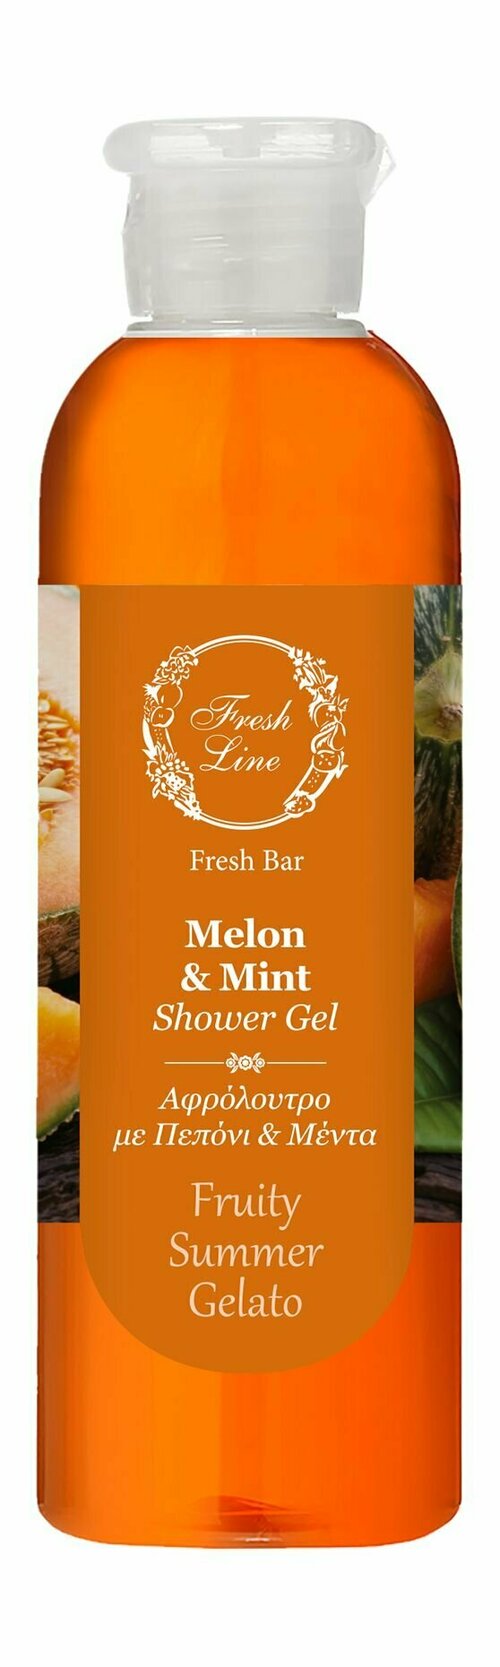 Гель для душа с экстрактом мяты и дыни / Fresh Line Melon and Mint Shower Gel